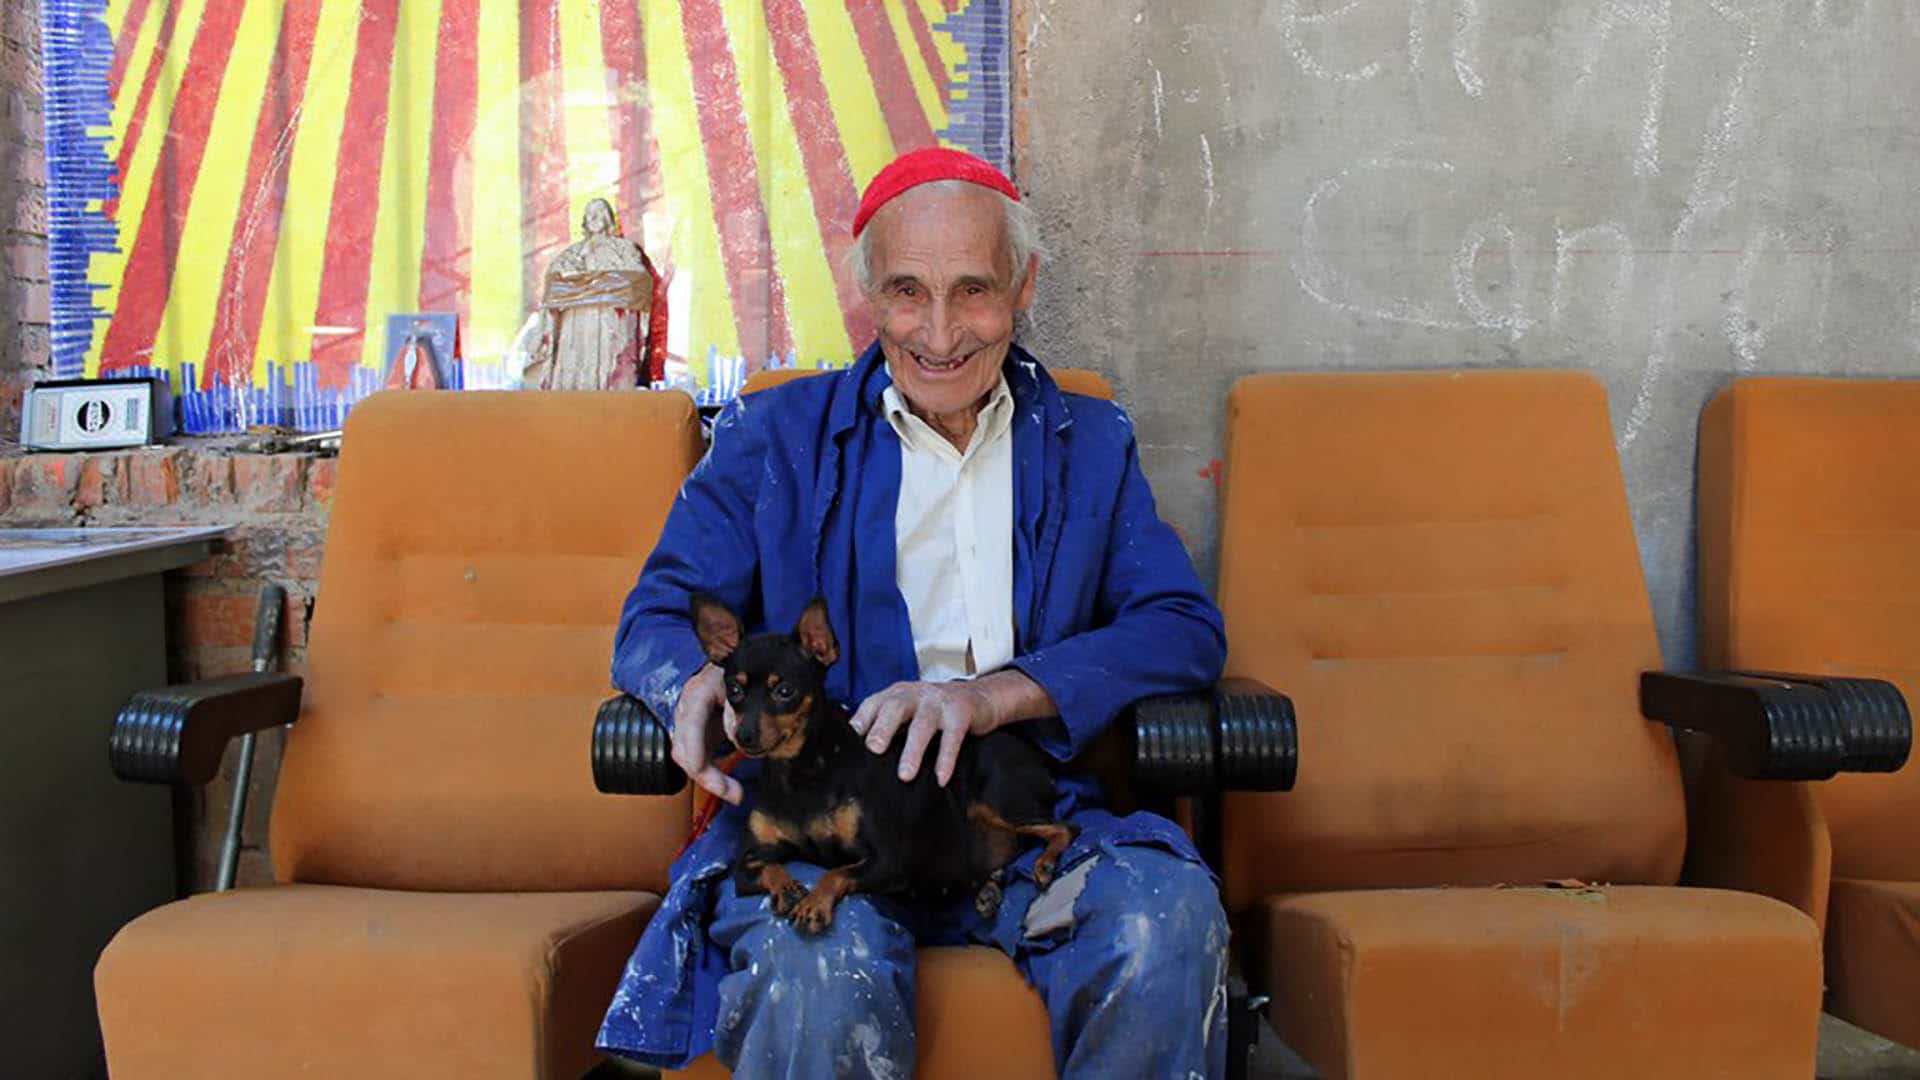 Der 94-jährige ehemalige Zisterziensermönch Justo Gallego empfängt in seiner selbstgebauten Kathedrale jedes Jahr viele Besucher